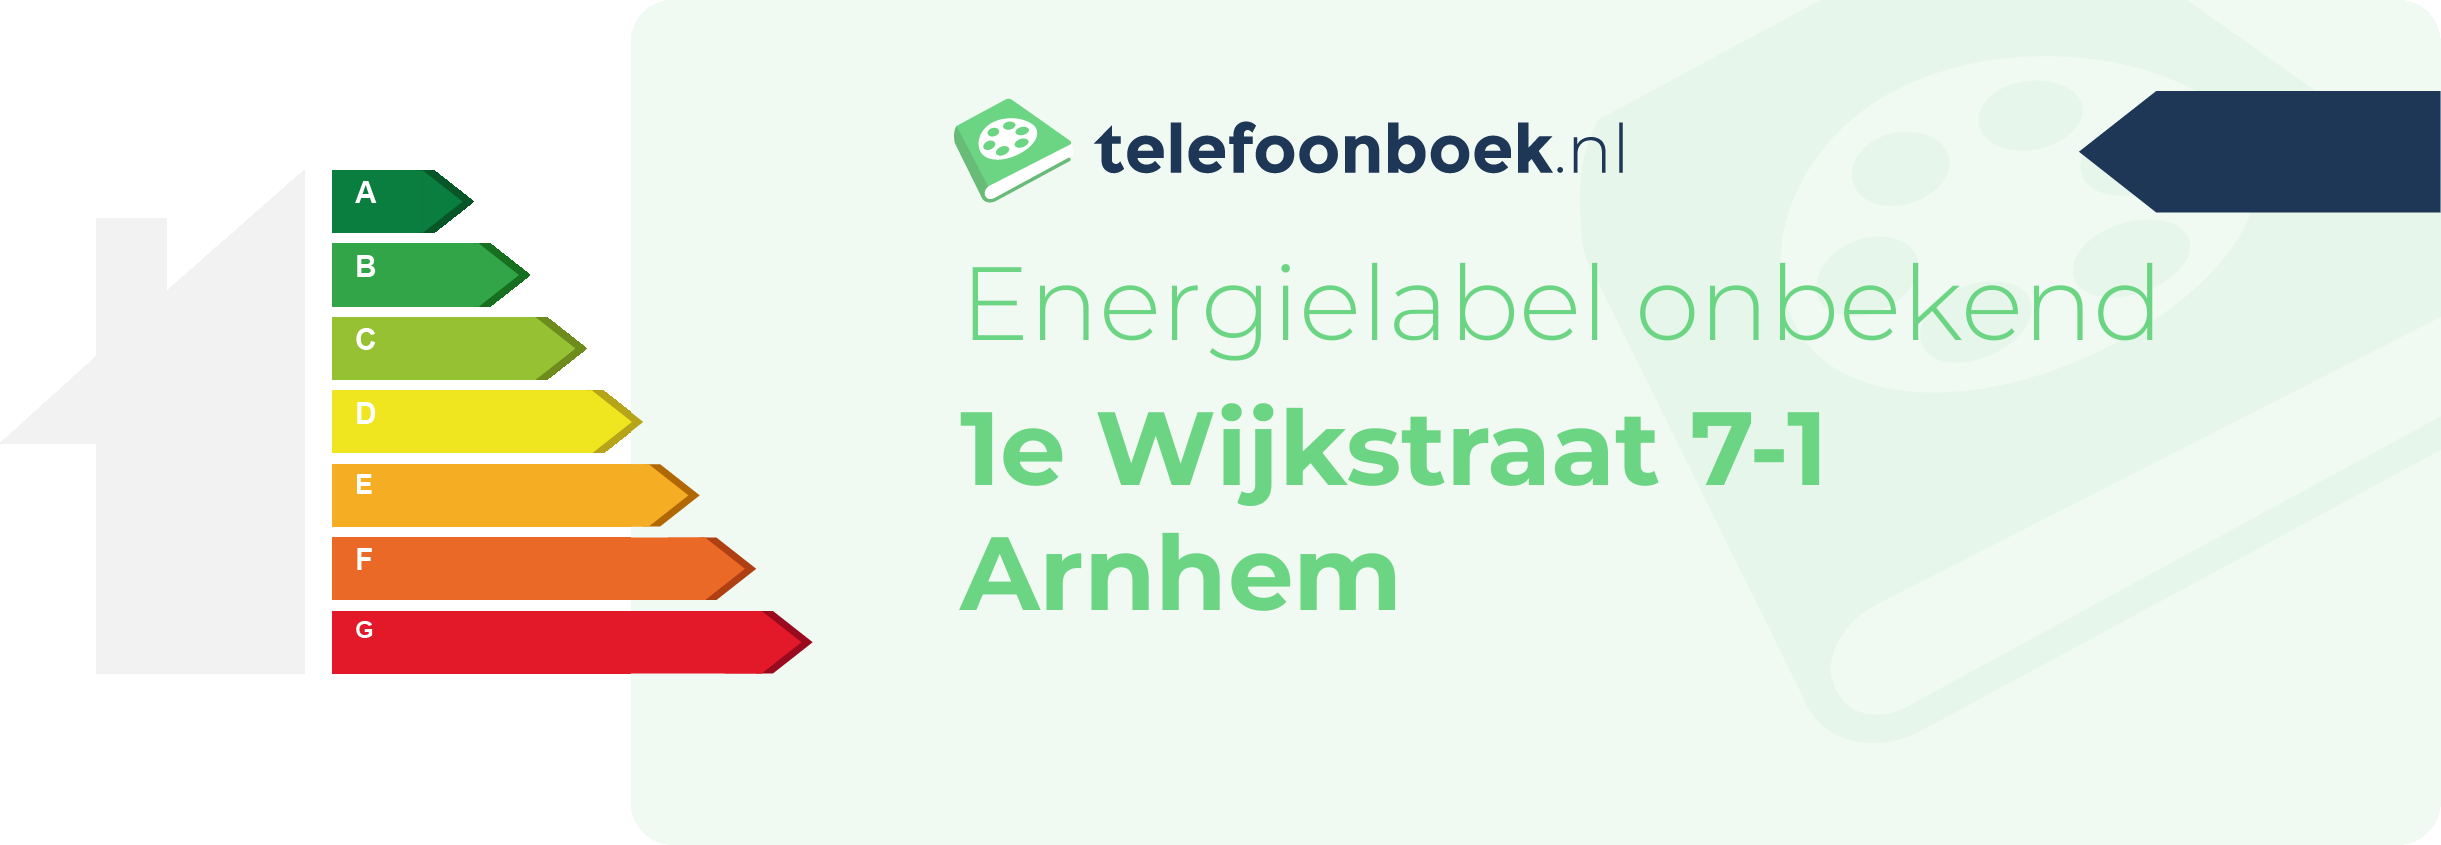 Energielabel 1e Wijkstraat 7-1 Arnhem